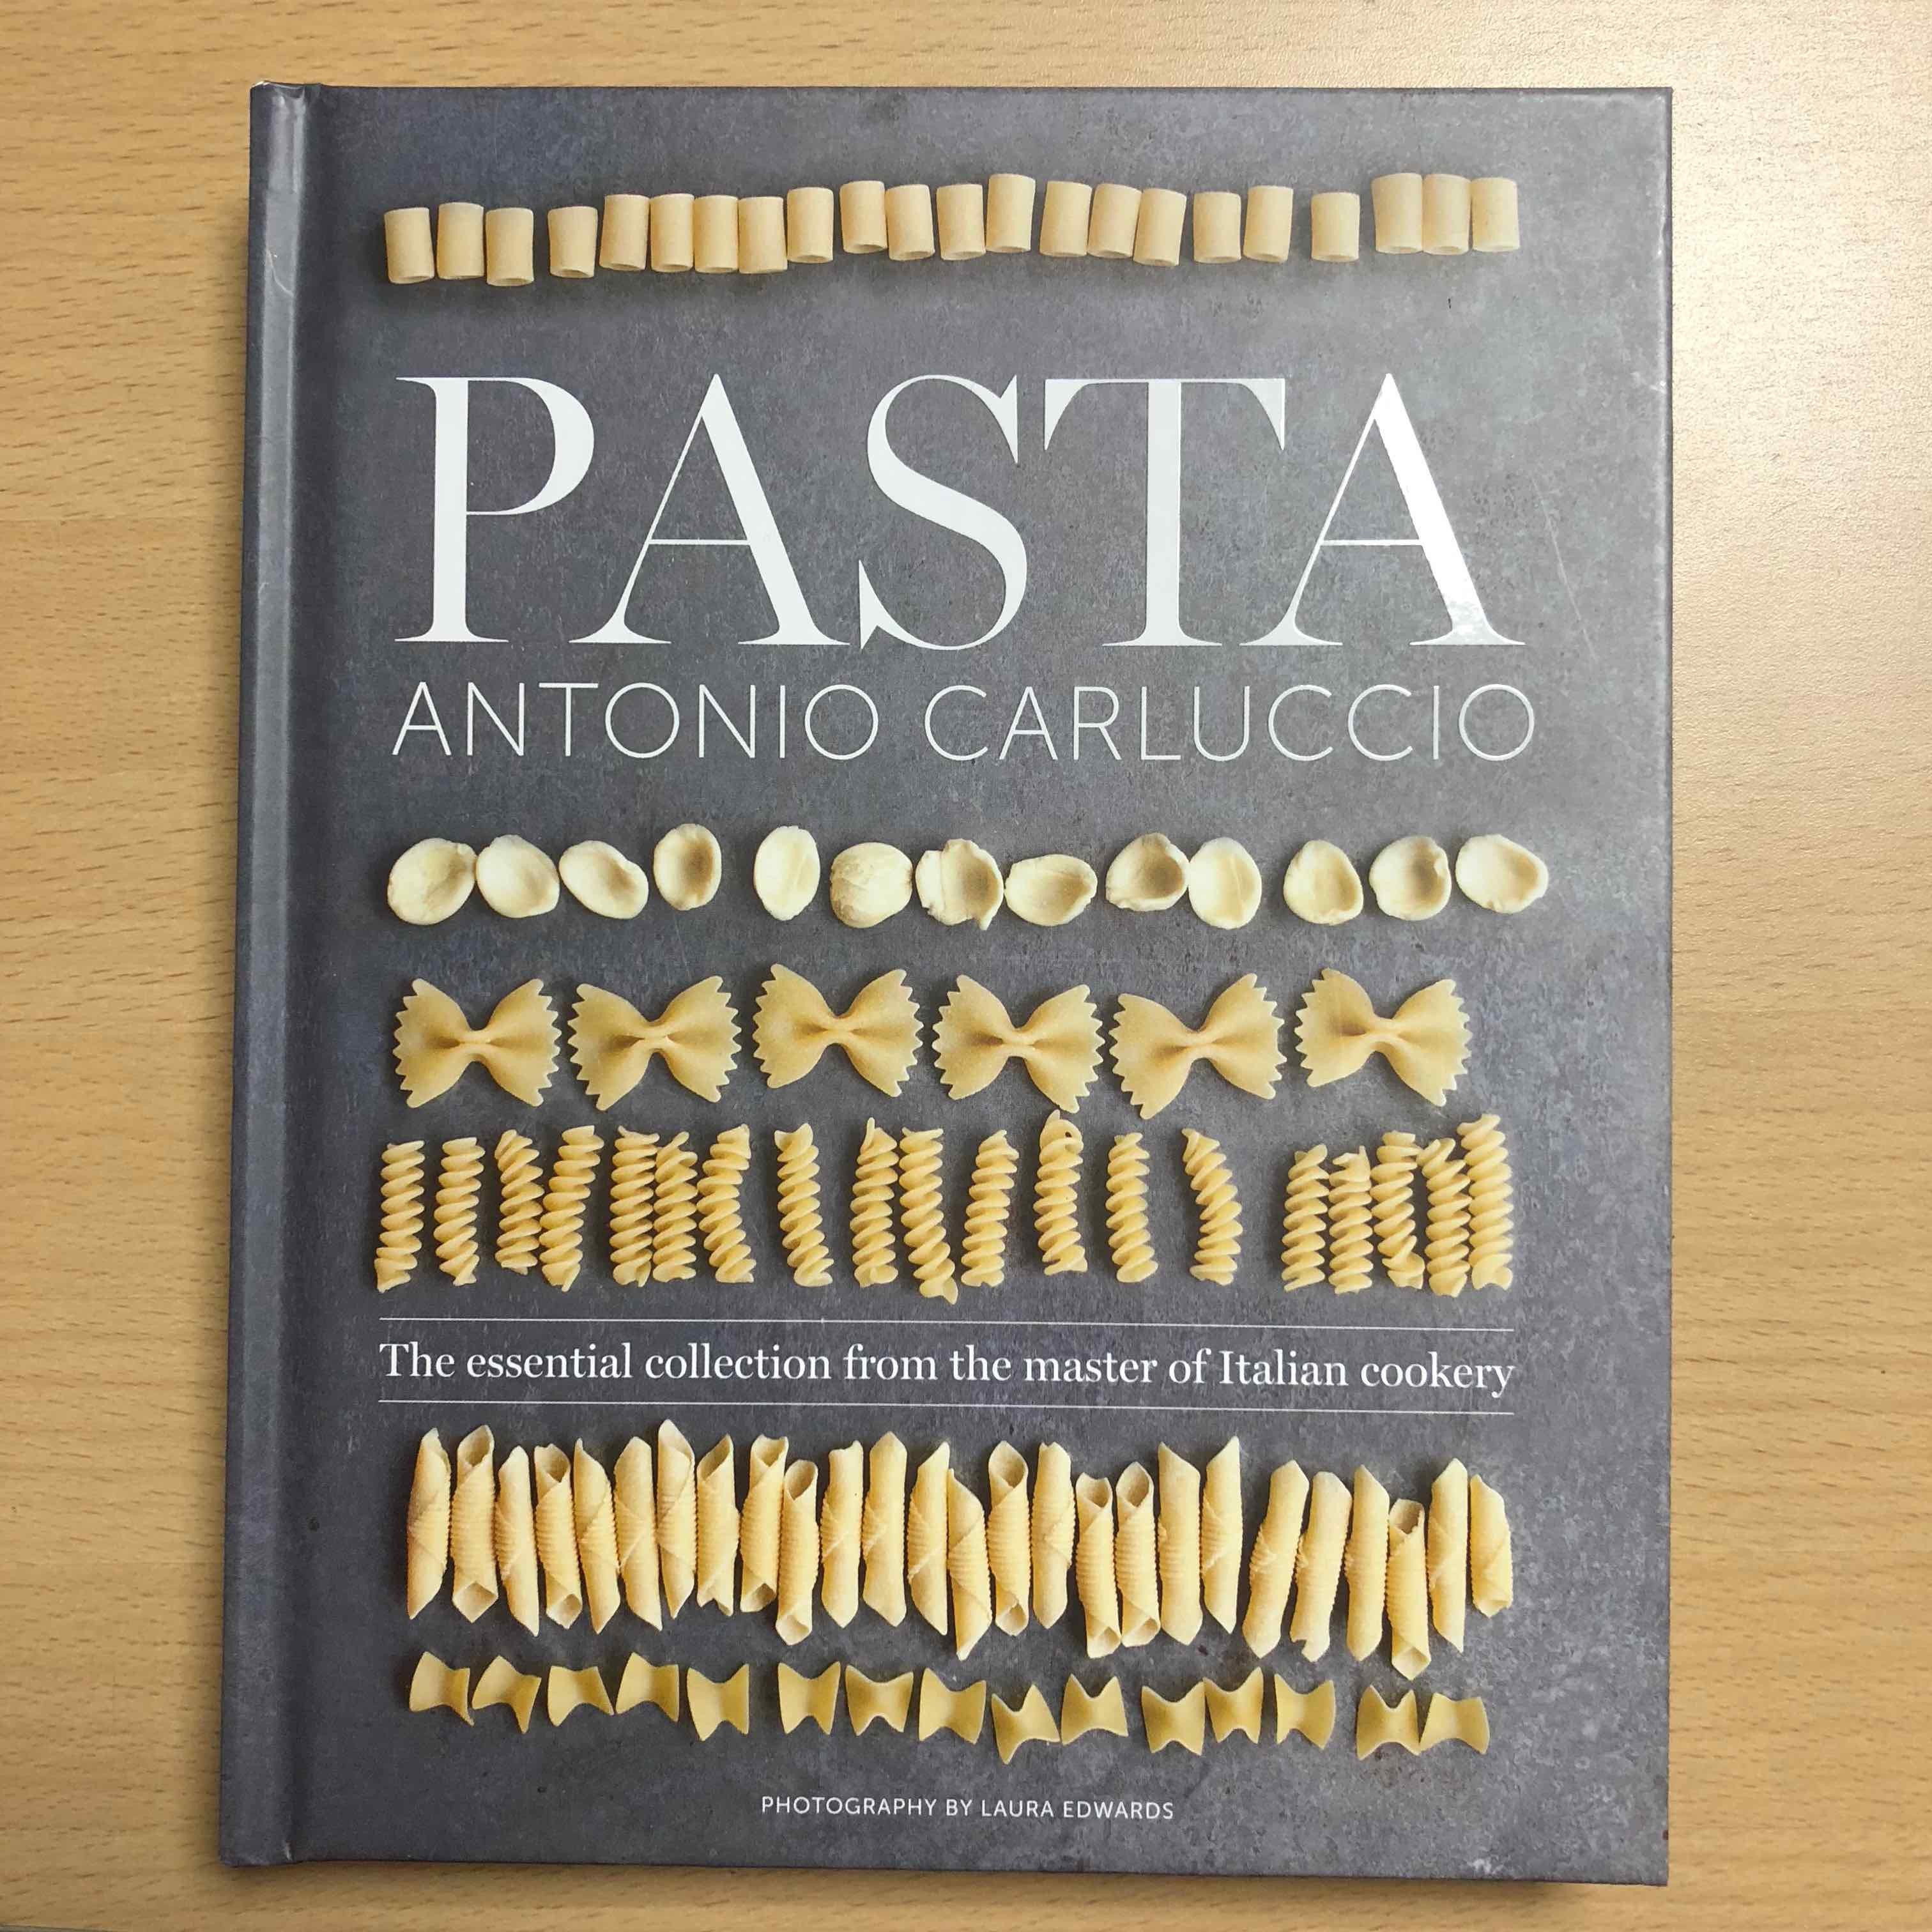 The Pasta